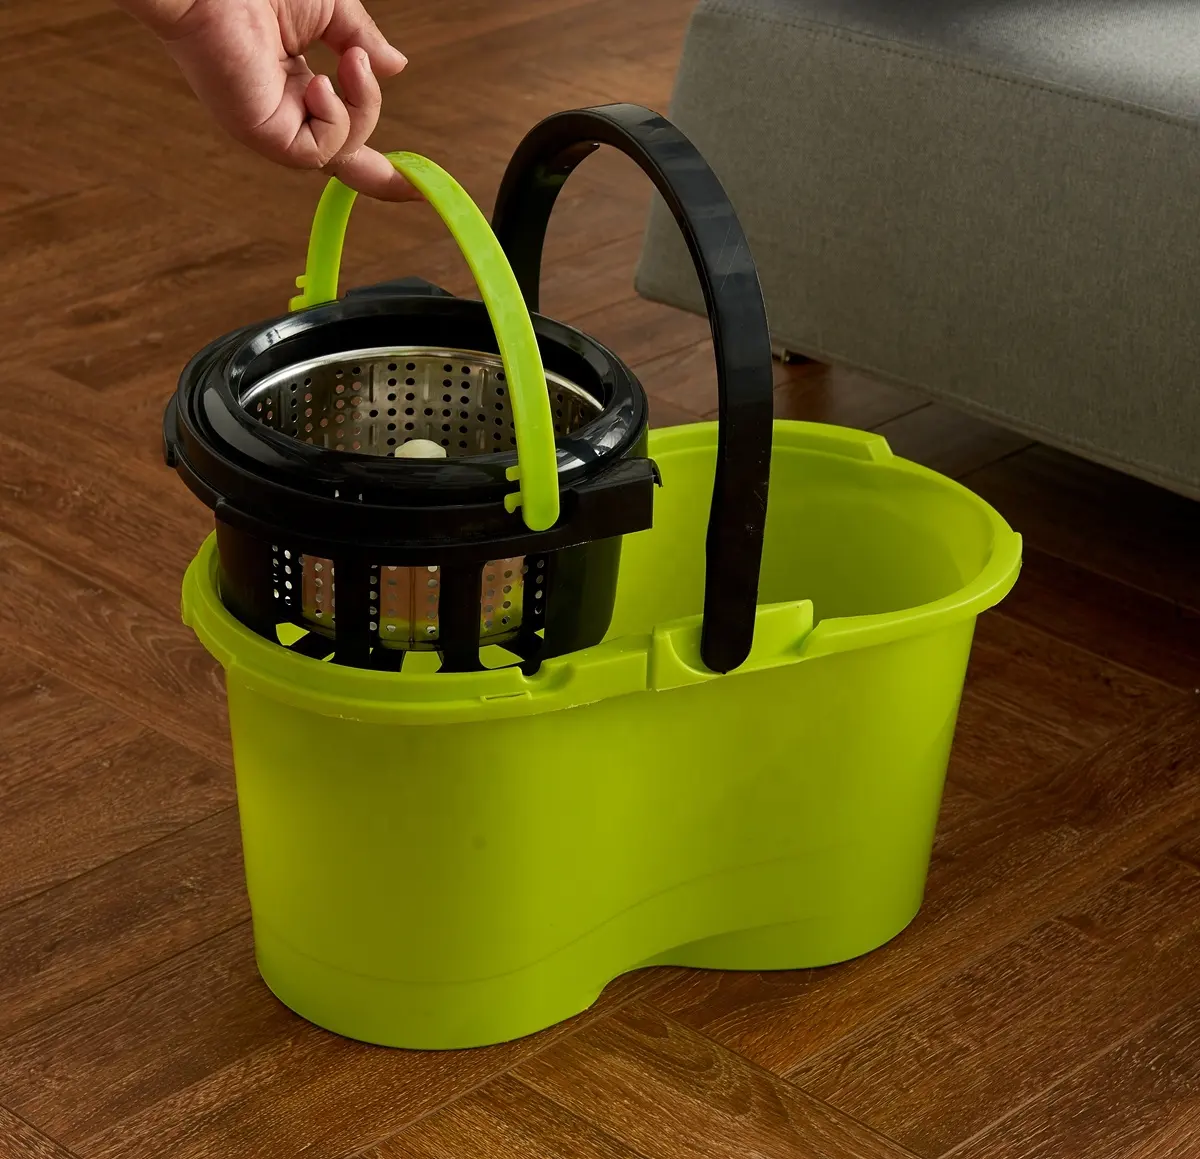 Hot floor rotary magic 360 cotton ruotato basket spinning mopping cleaner prodotti materiali per la pulizia mop per uso domestico